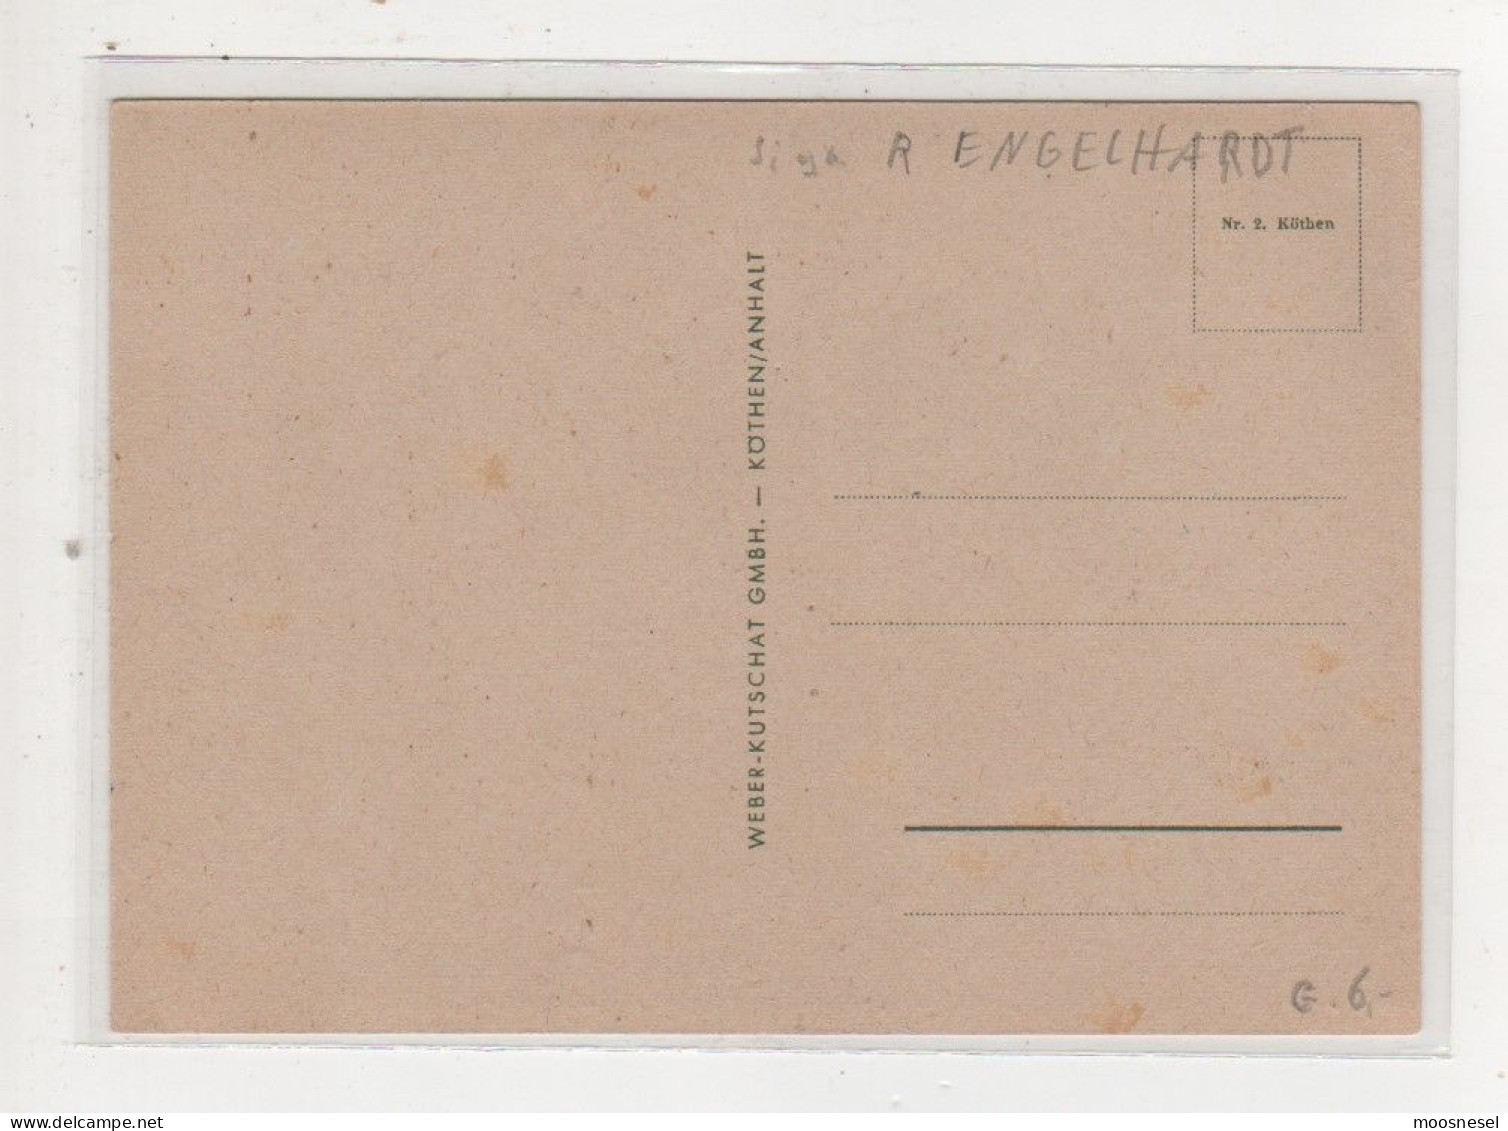 Antike Postkarte -R.ENGELHARD "UNERWÜNSCHTER BESUCH" - Engelhard, P.O. (P.O.E.)